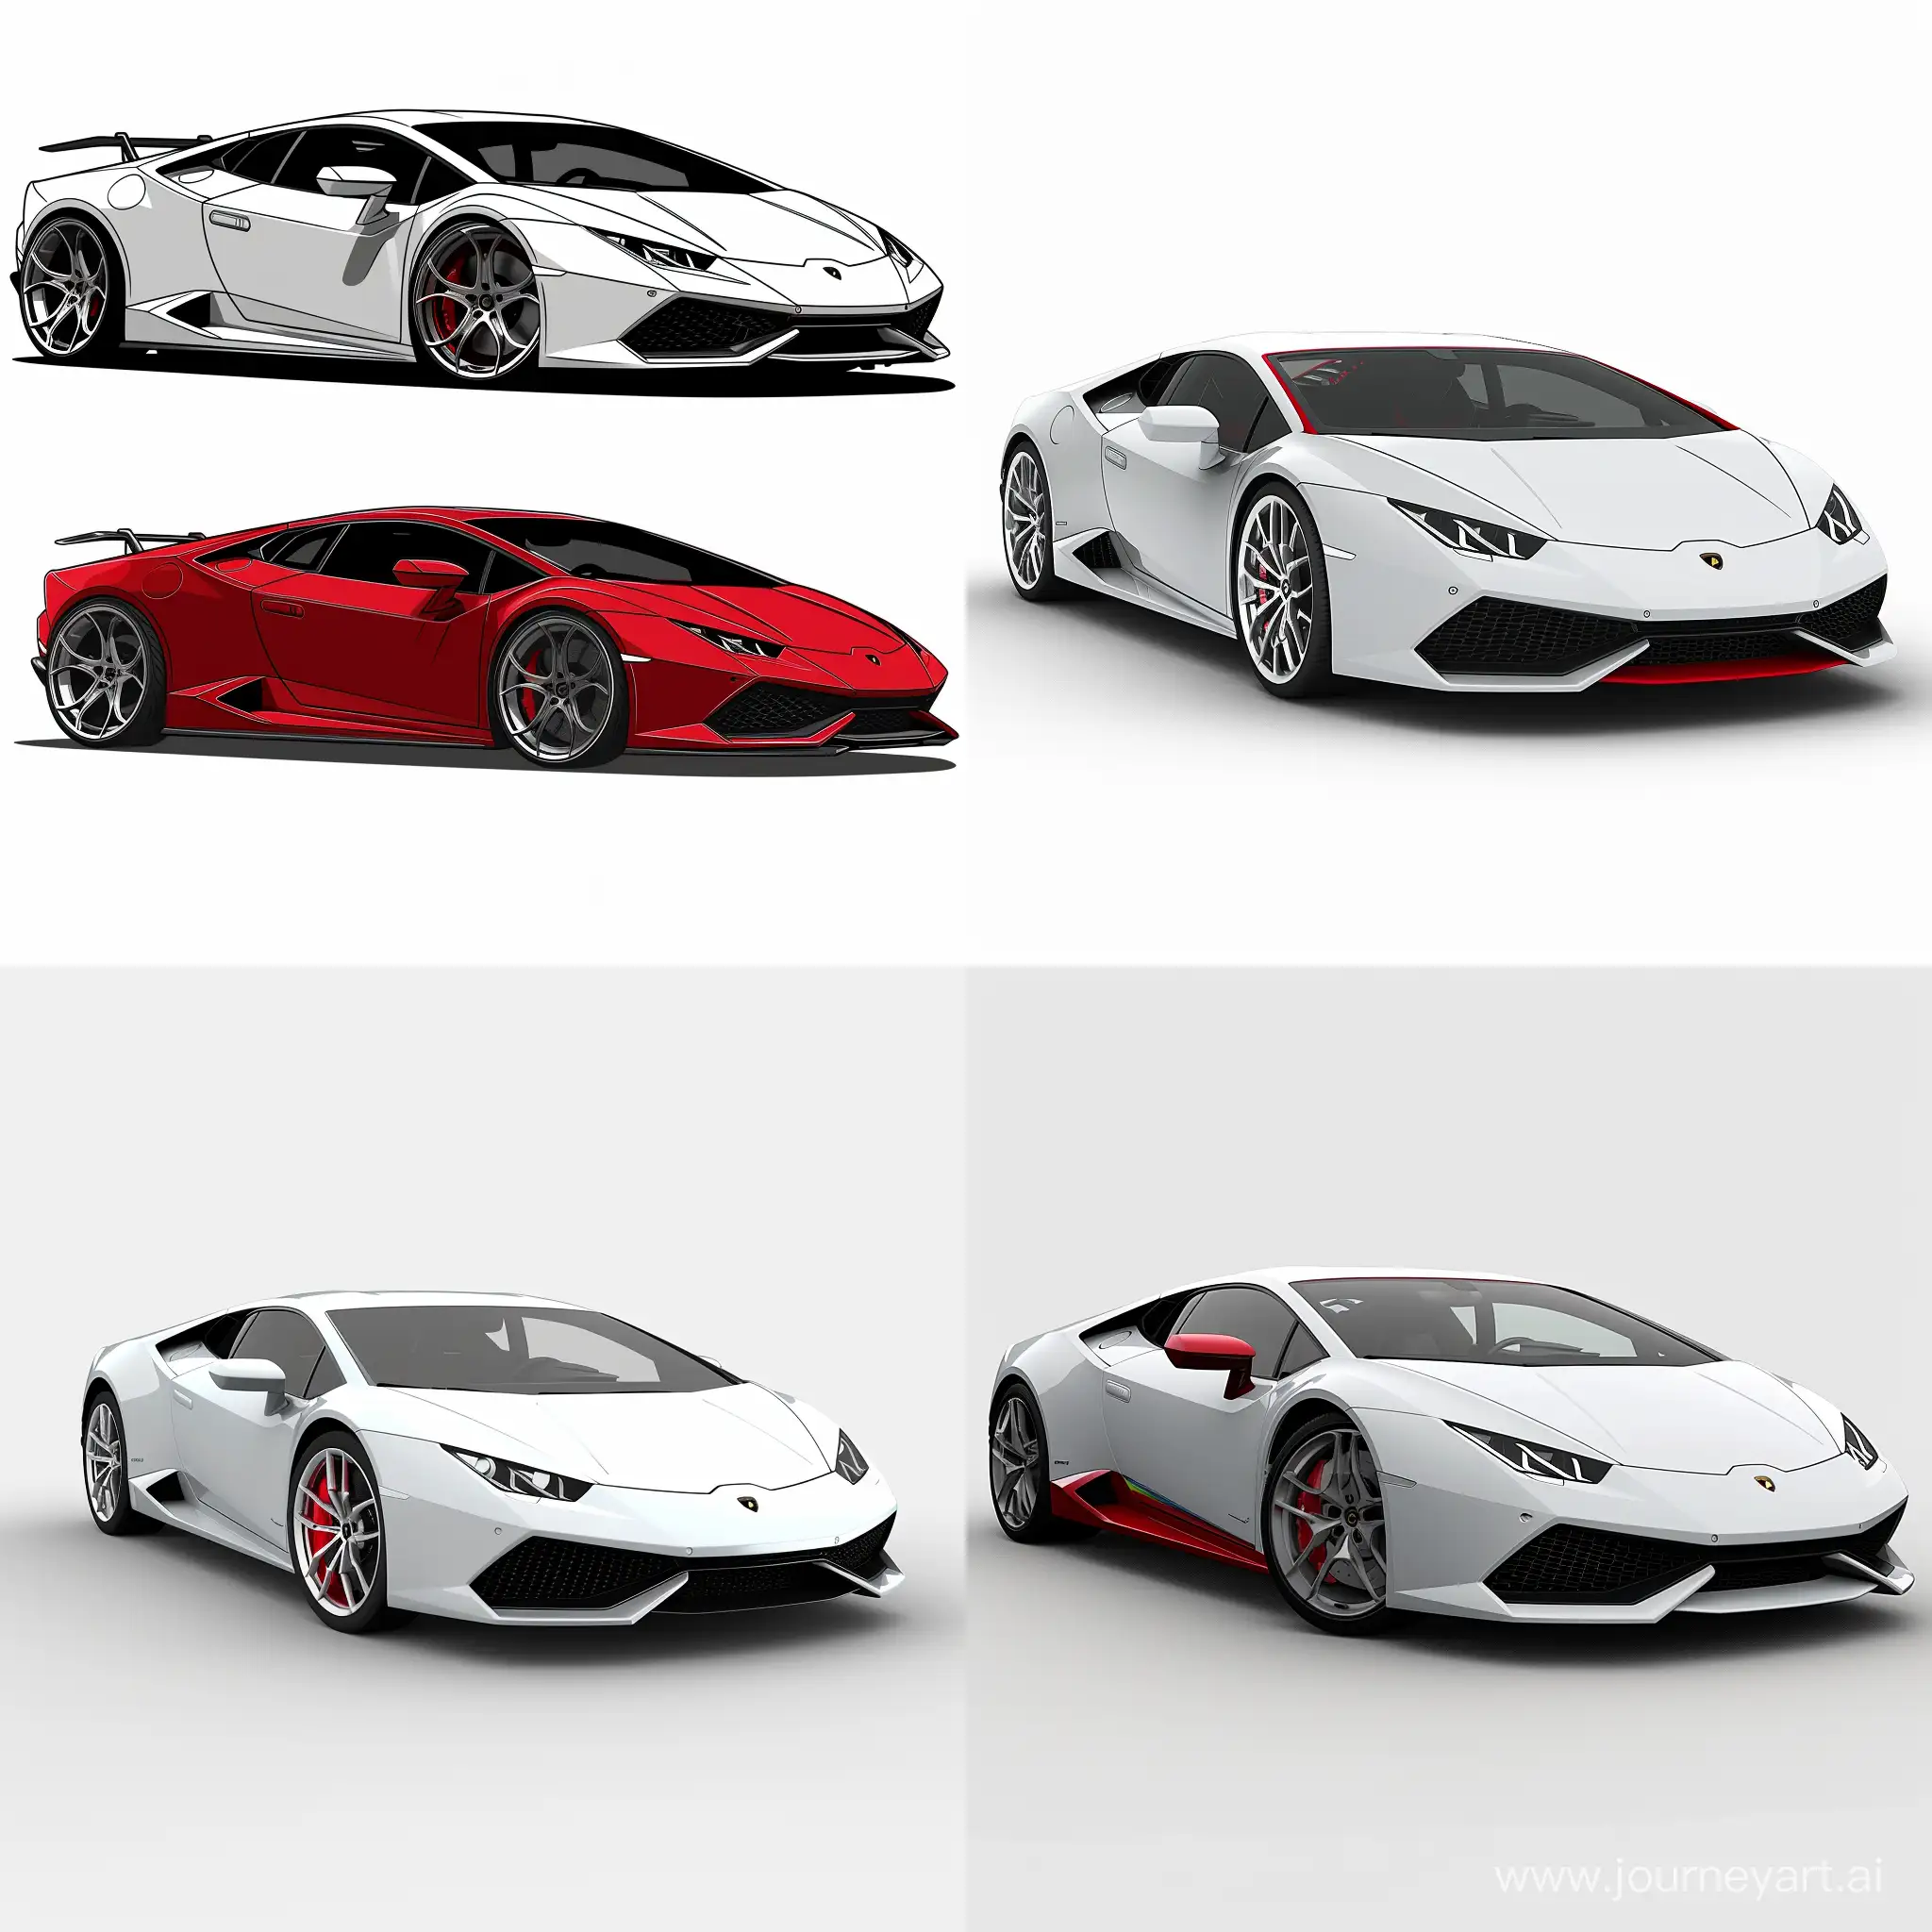 Lamborghini-Huracan-2D-Illustration-Sleek-White-Car-with-Striking-Red-Details